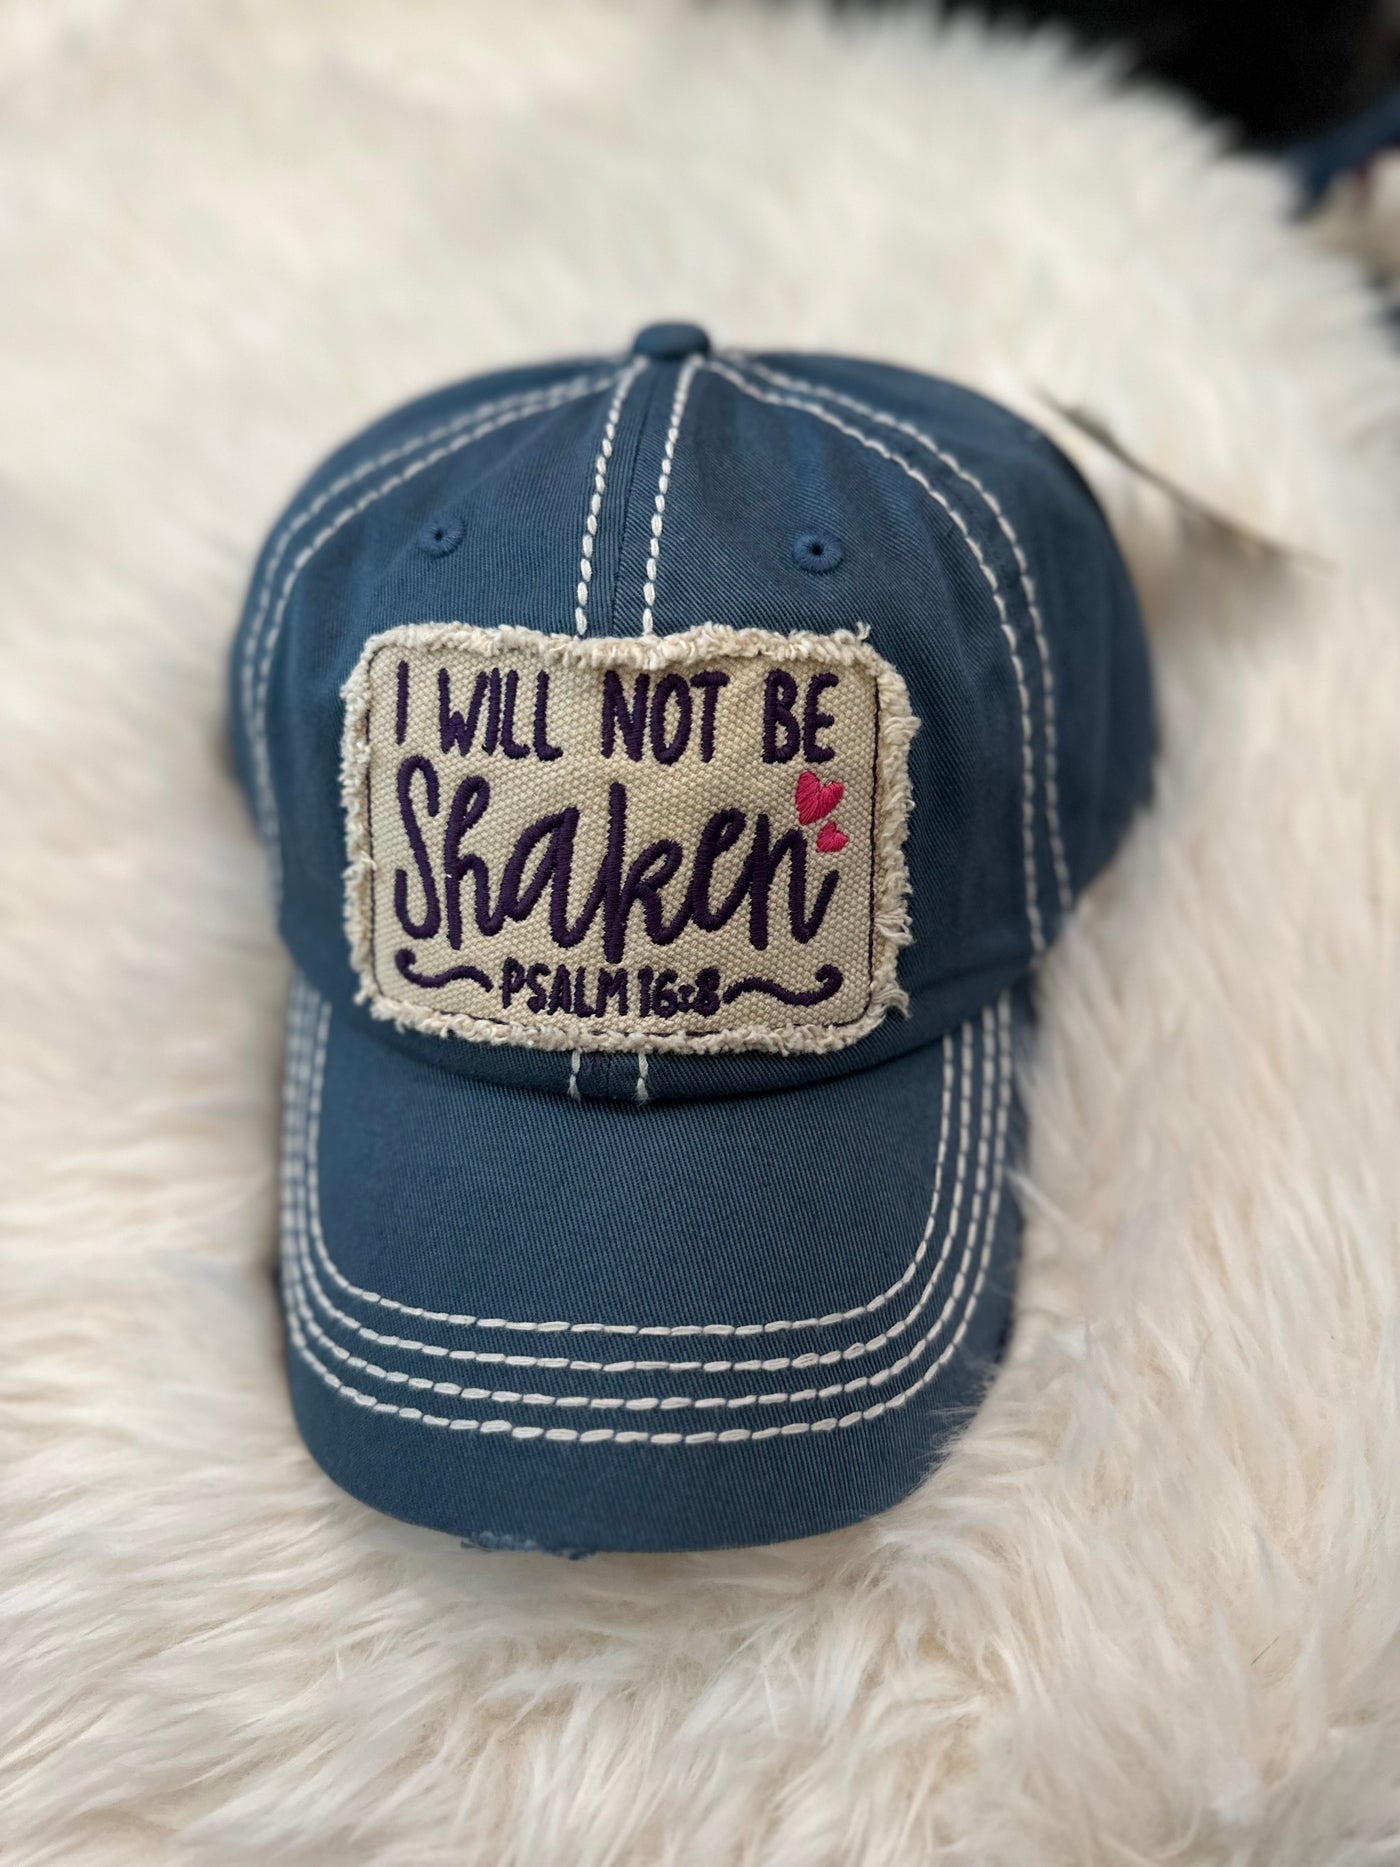 "I Will Not Be Shaken" Psalm 16:8 Hat